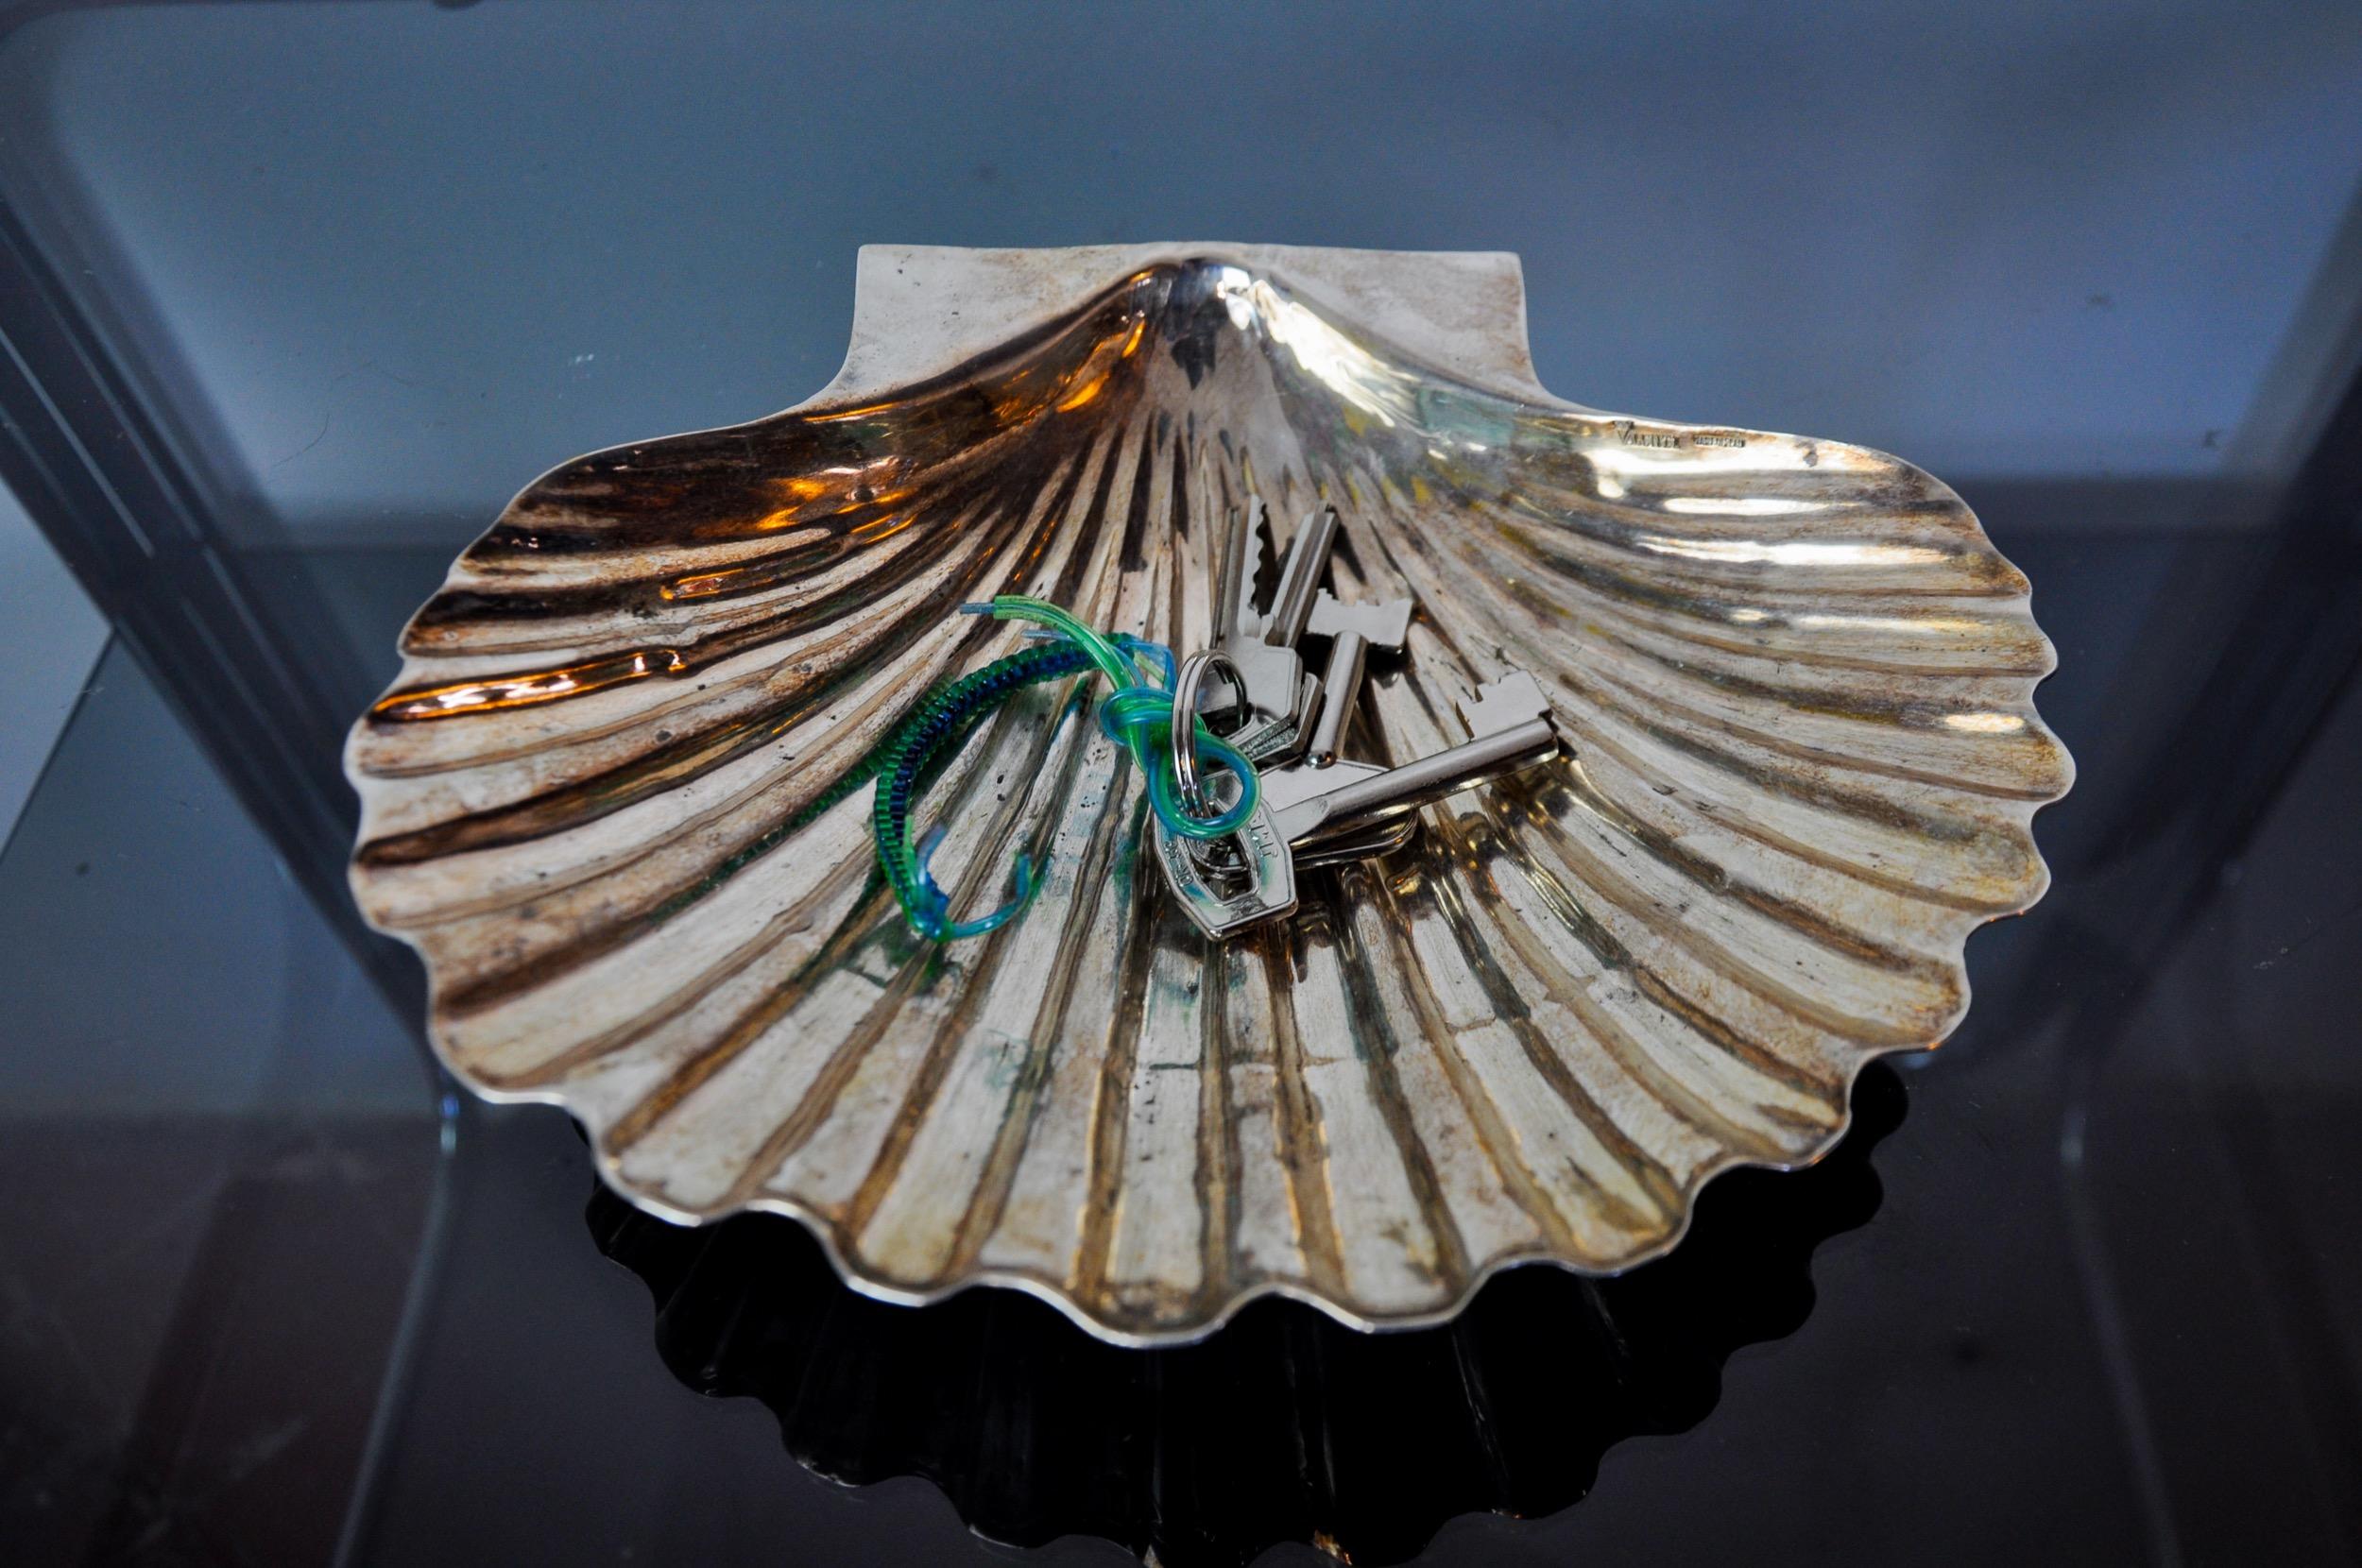 Hervorragende und große Shell leere Tasche von Valentin in Spanien in den 1970er Jahren entworfen. Silberne Metallstruktur, die eine Jakobsmuschel darstellt, seit der Antike Symbol der Liebe und Schönheit. Hervorragendes Designobjekt, das Ihr